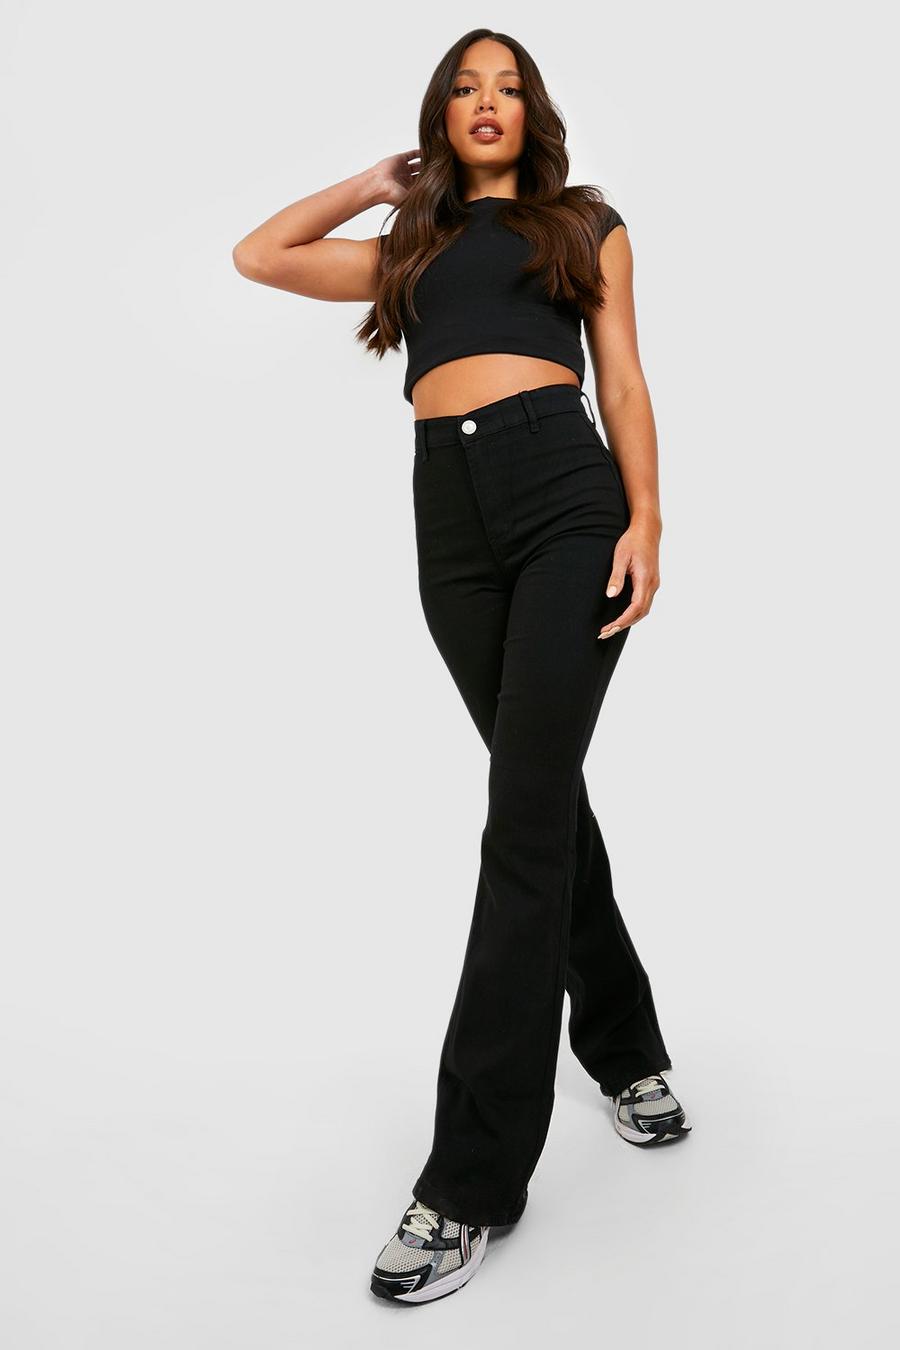 שחור negro סקיני ג'ינס High Waist מתרחב לנשים גבוהות